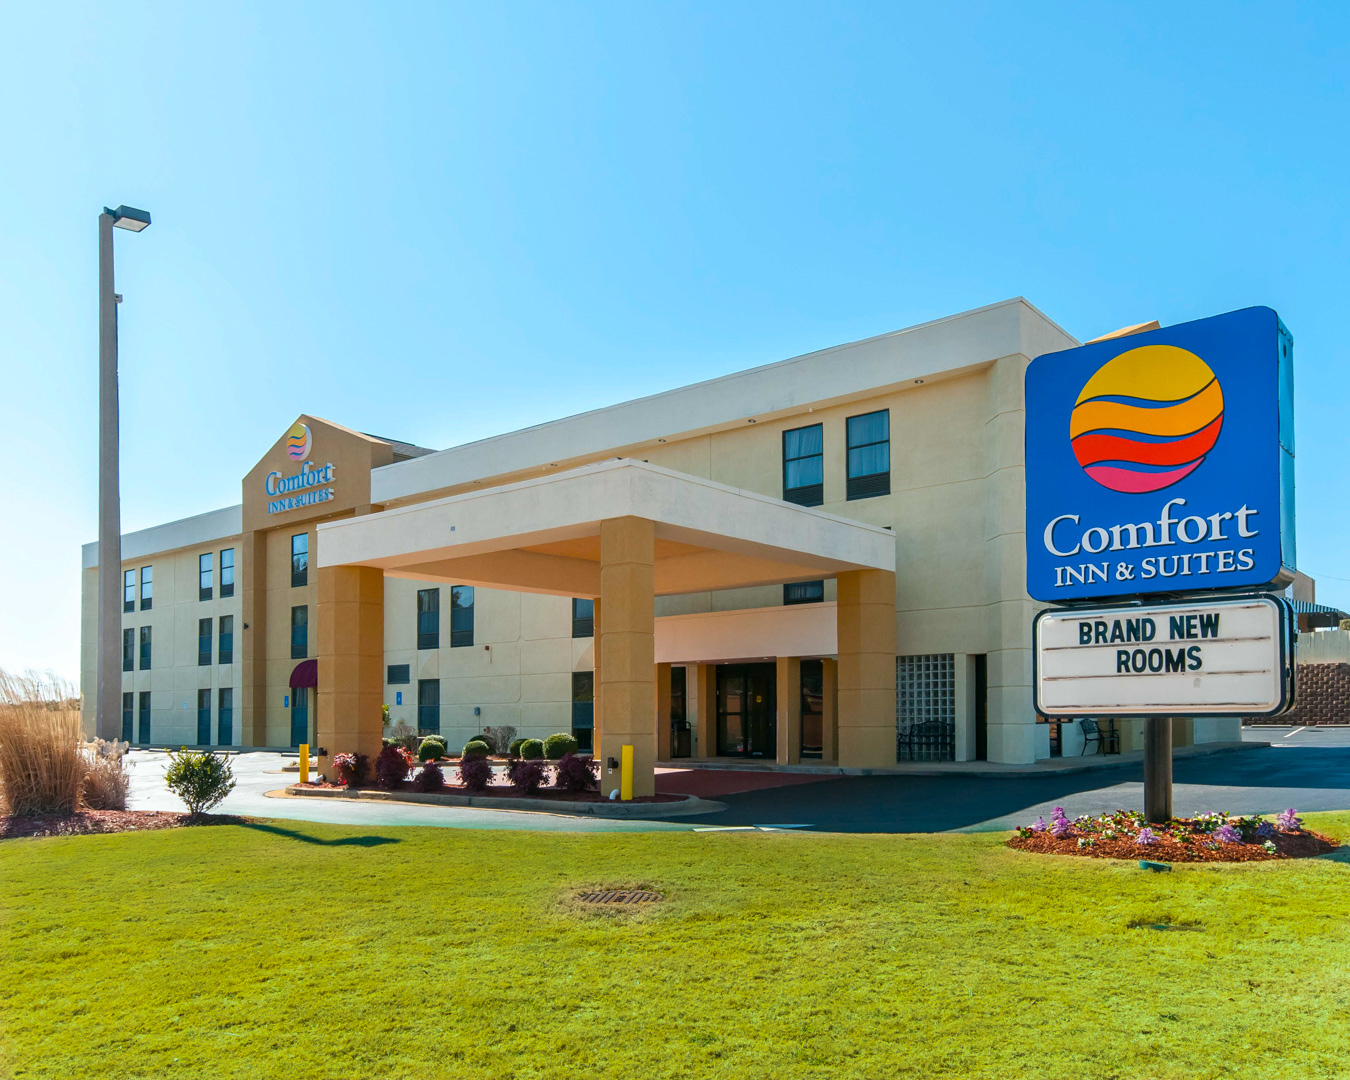 Comfort Inn & Suites Coupons Lagrange GA near me | 8coupons